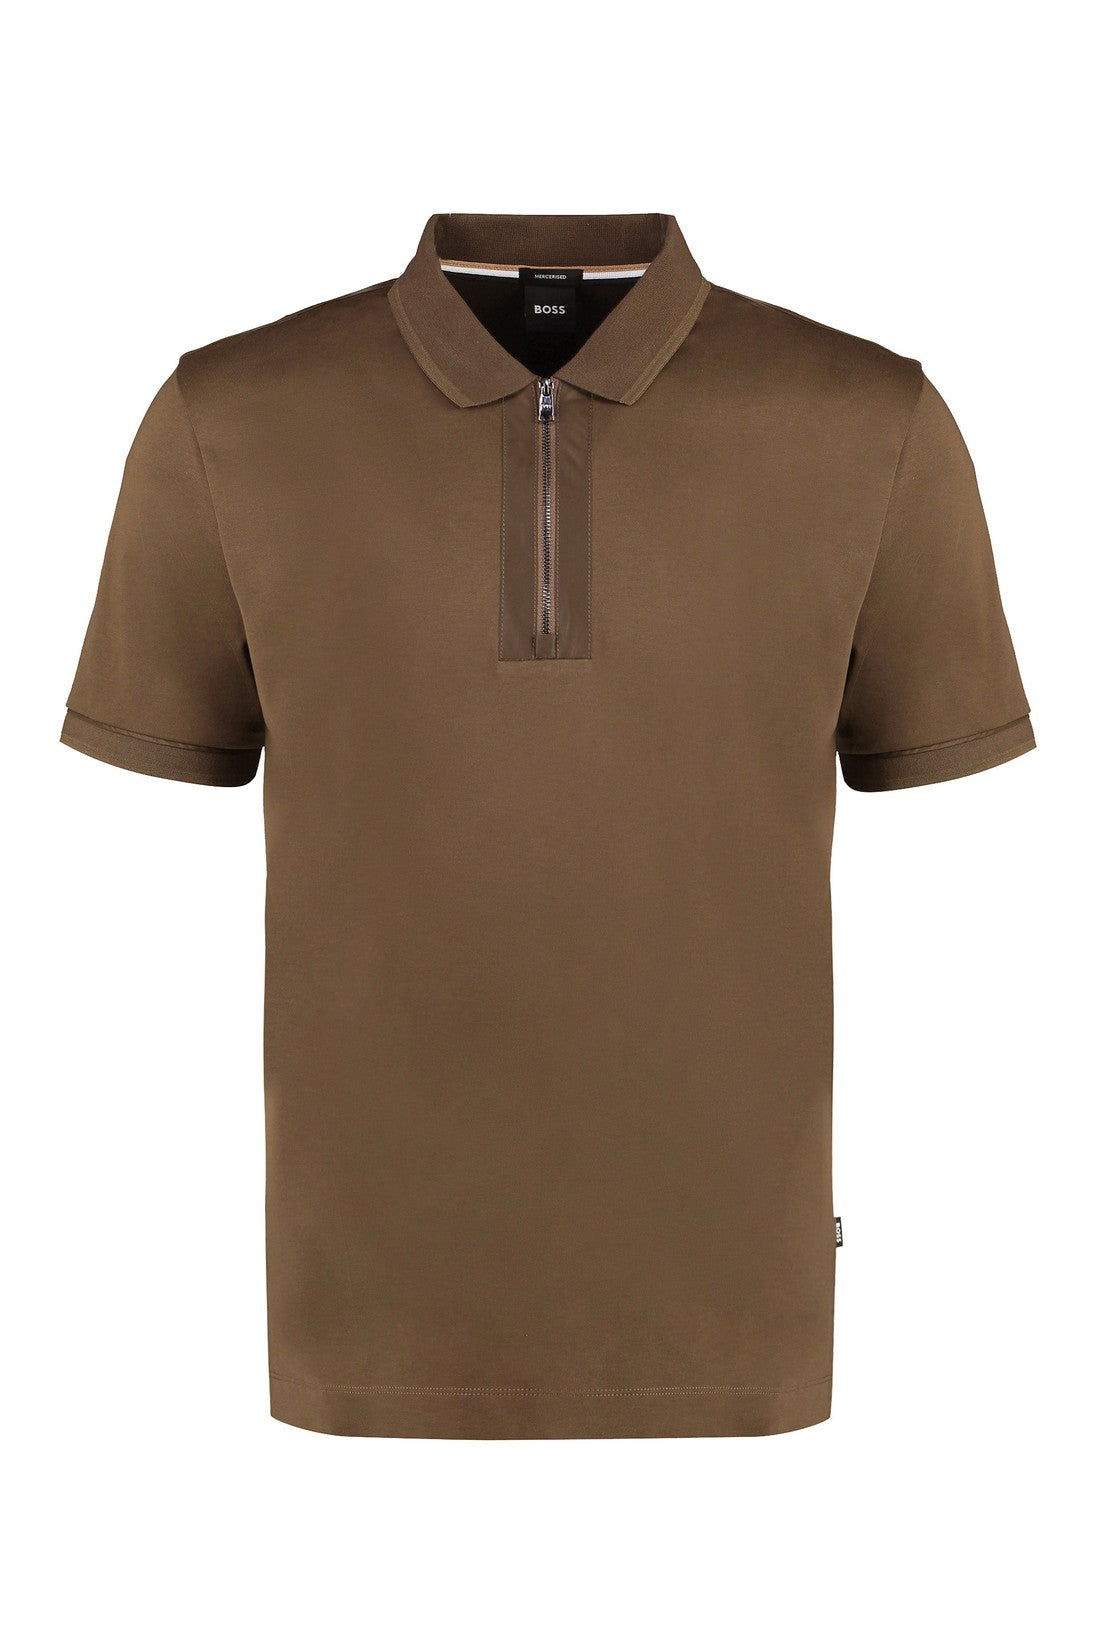 BOSS-OUTLET-SALE-Cotton polo shirt-ARCHIVIST